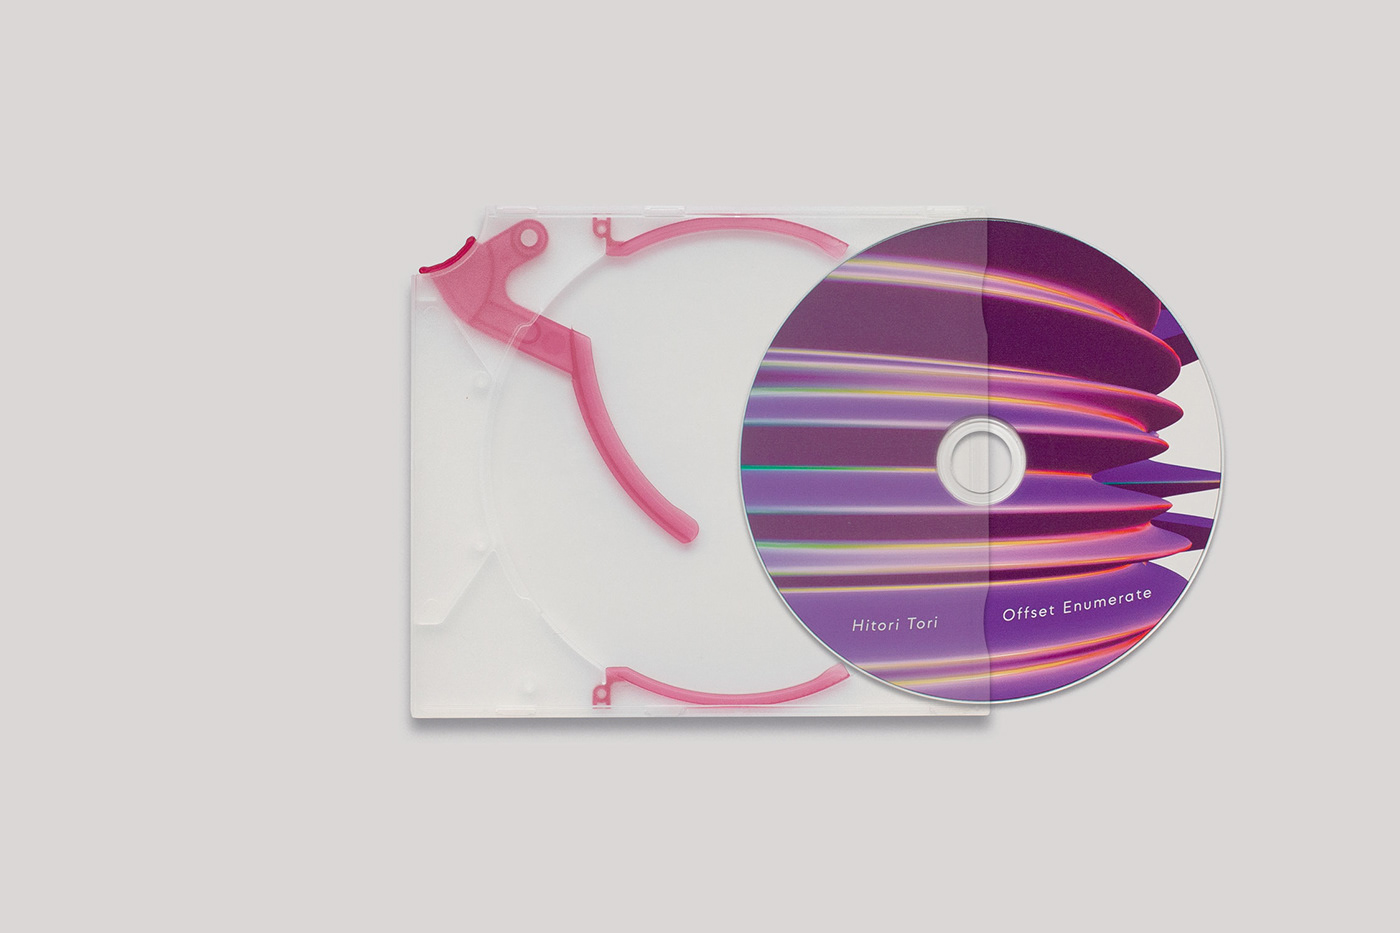 music electronic music music label cd vinyl artwork cover design logo Logotype Cover Art